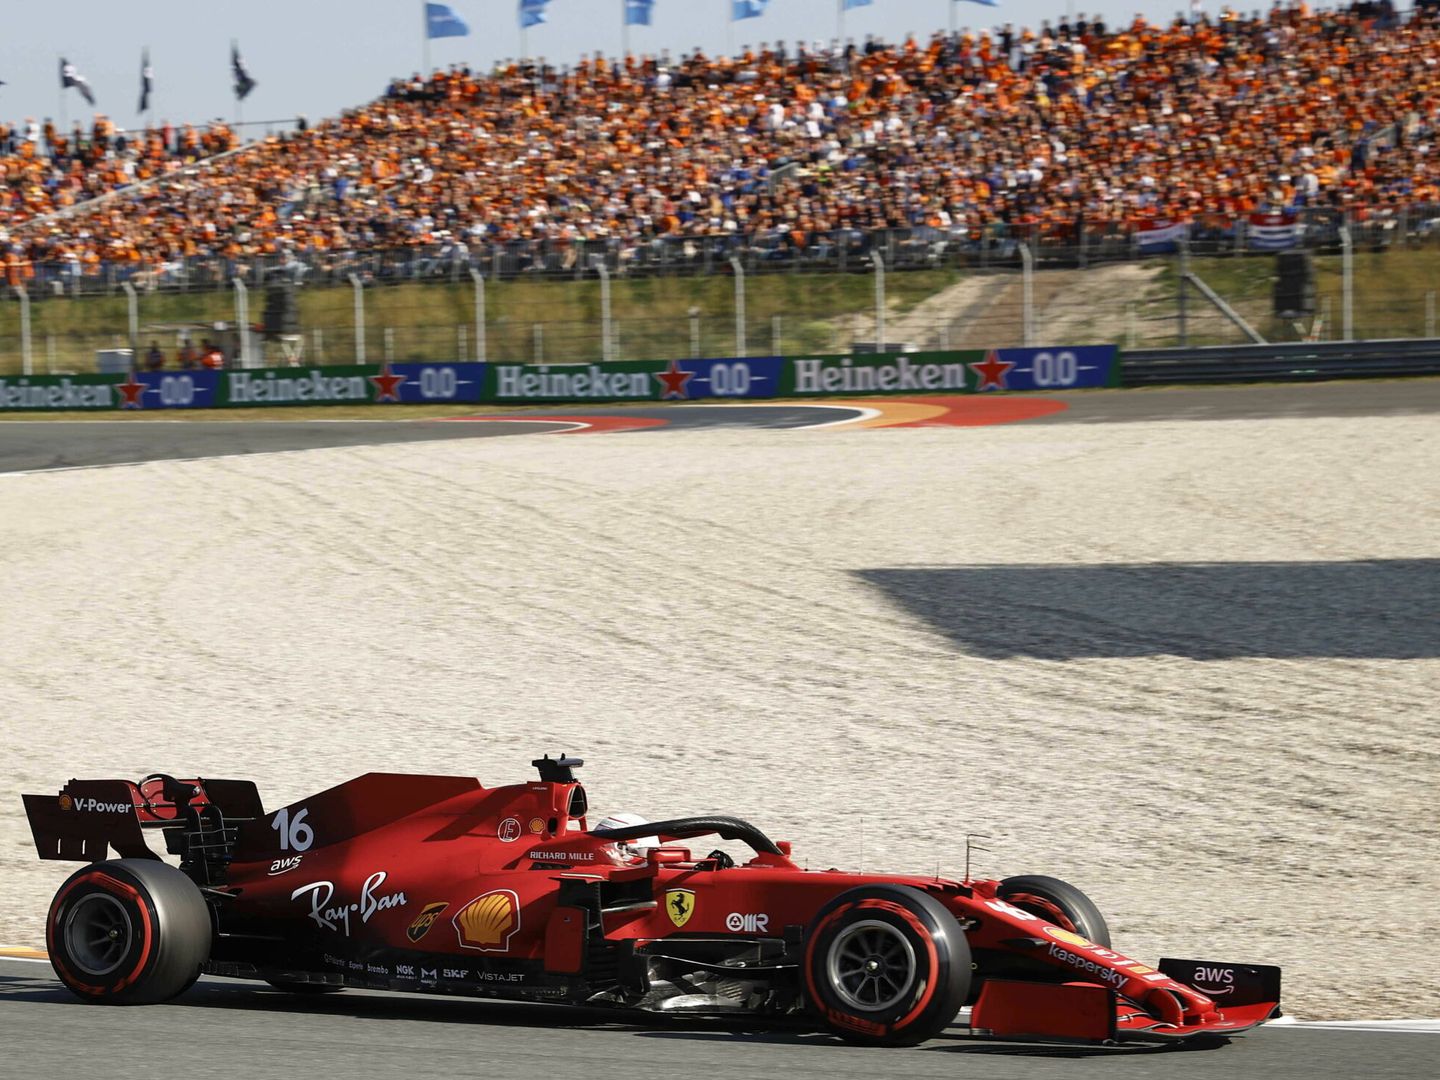 La Fórmula 1 está convirtiéndose en uno de los mejores vehículos de promoción para países y ciudades